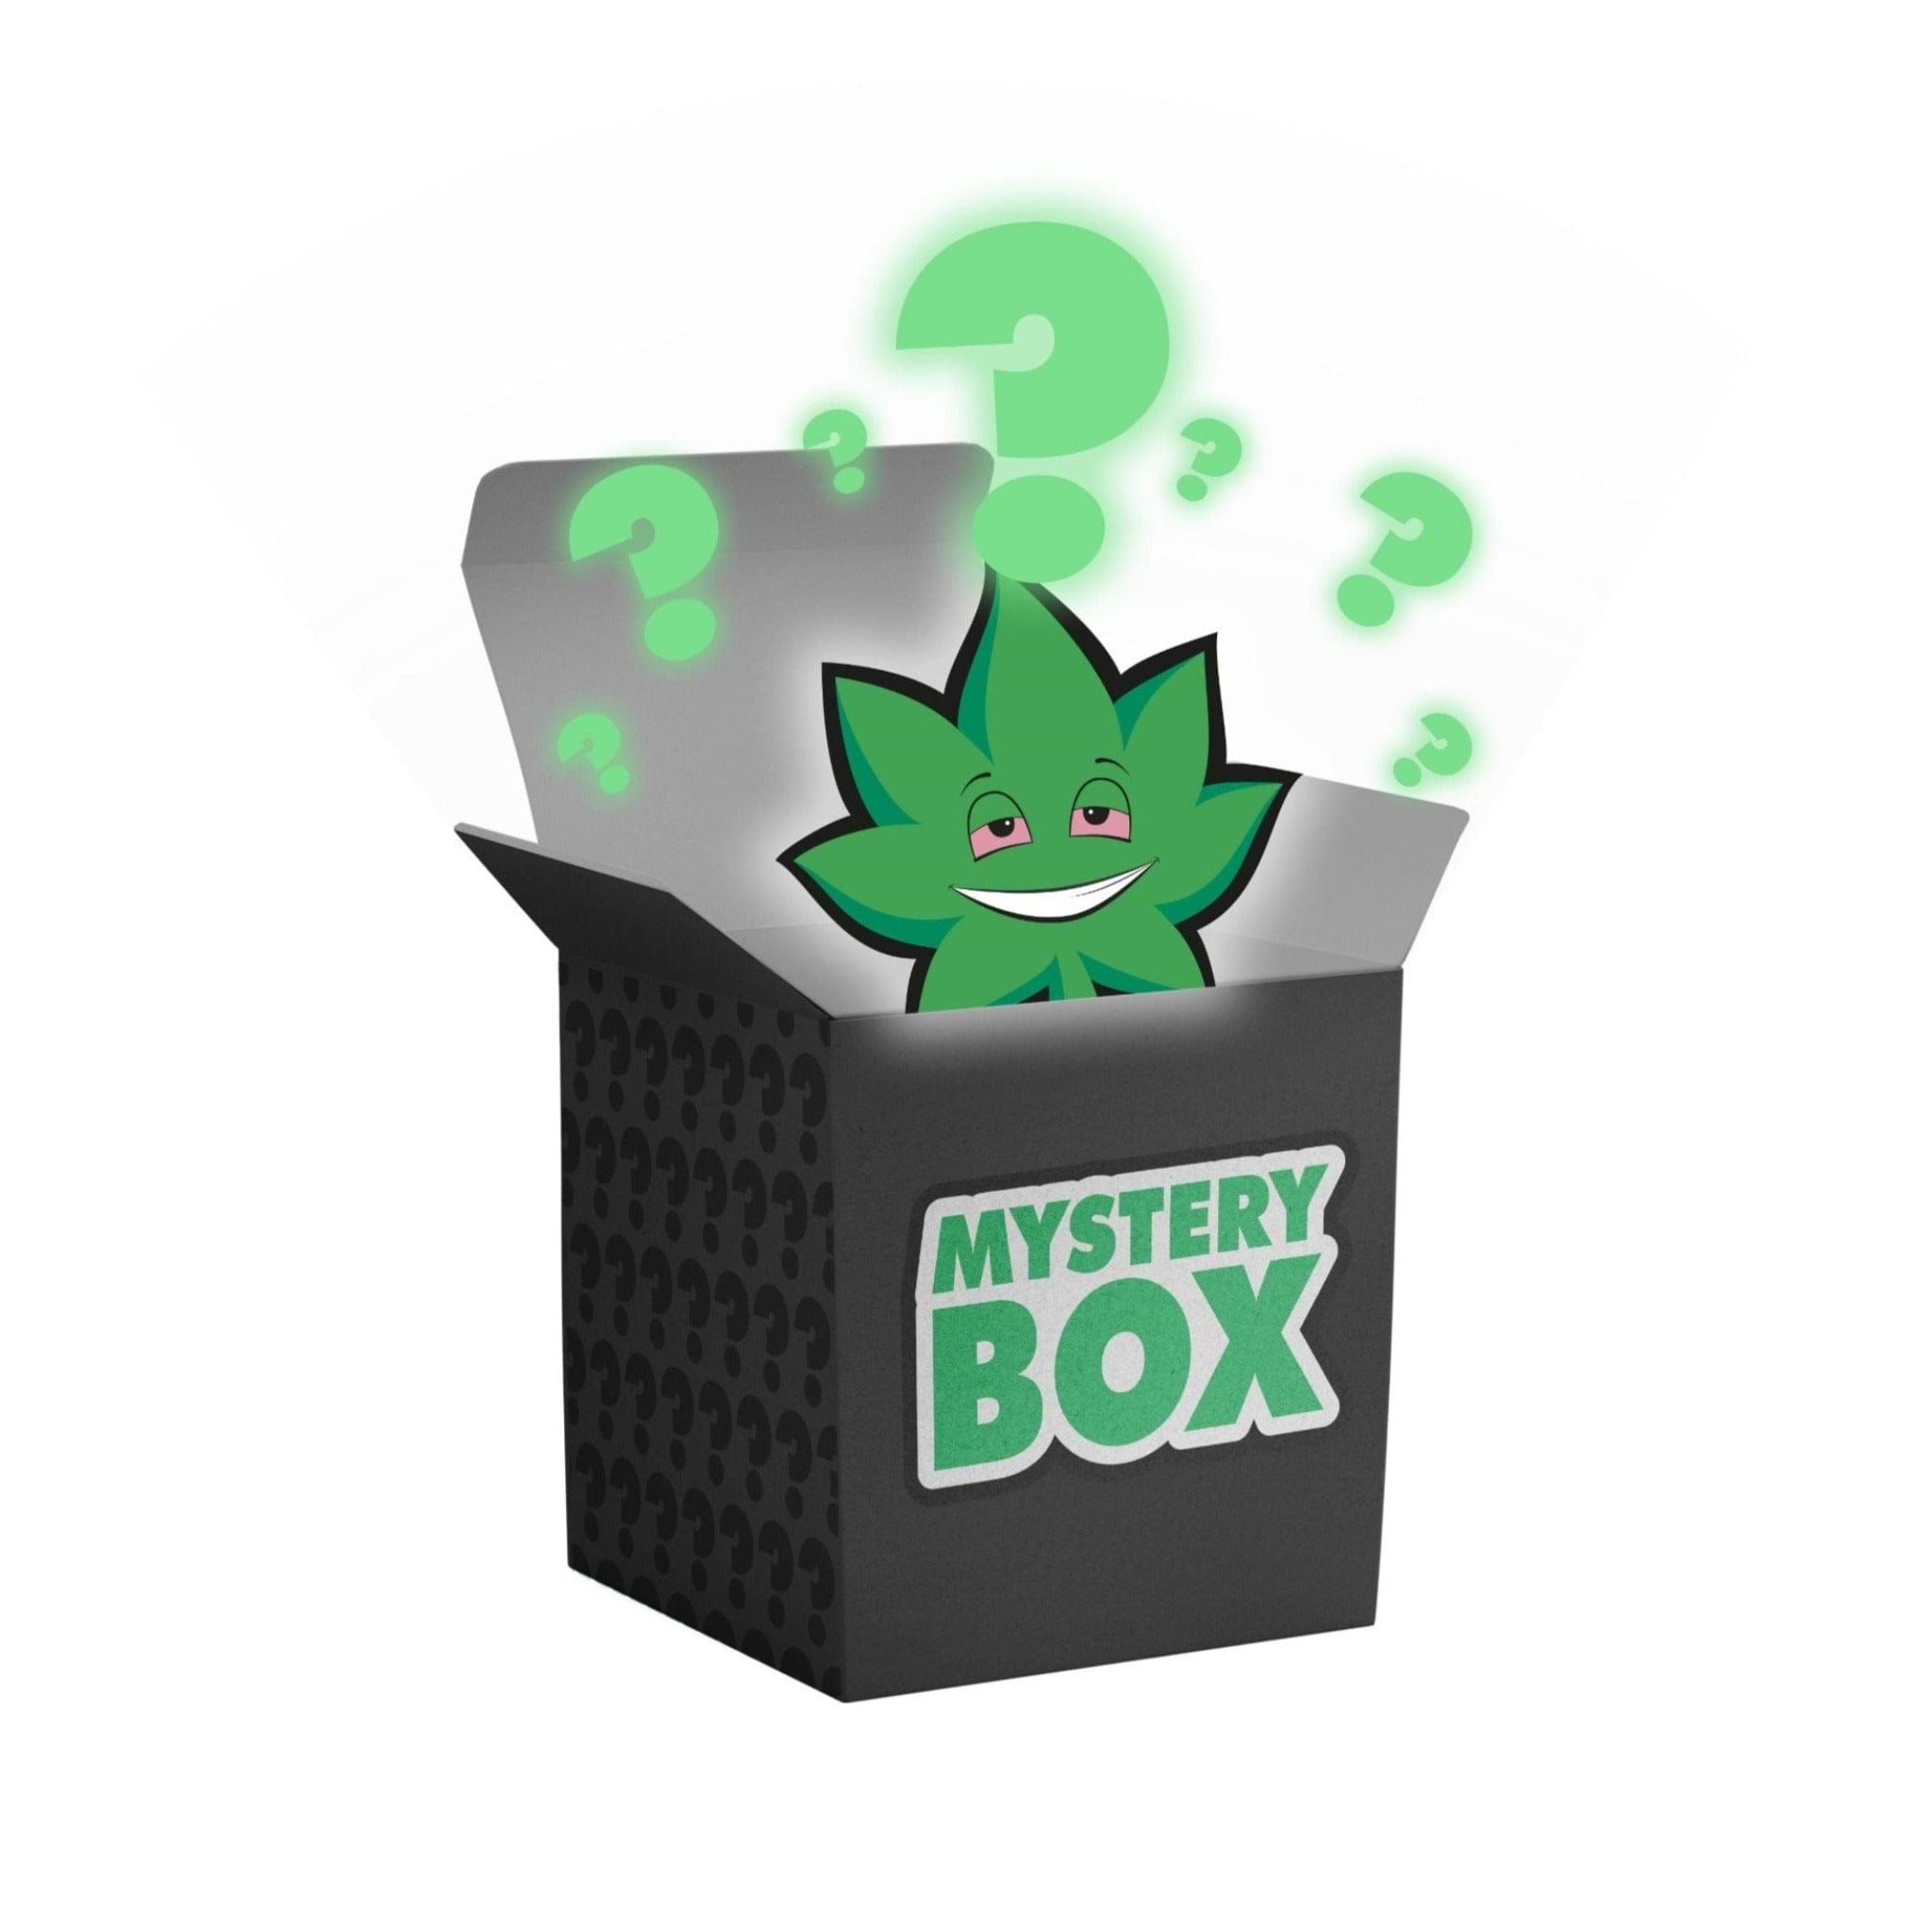 Mystery Box, Best Smoke Boxes